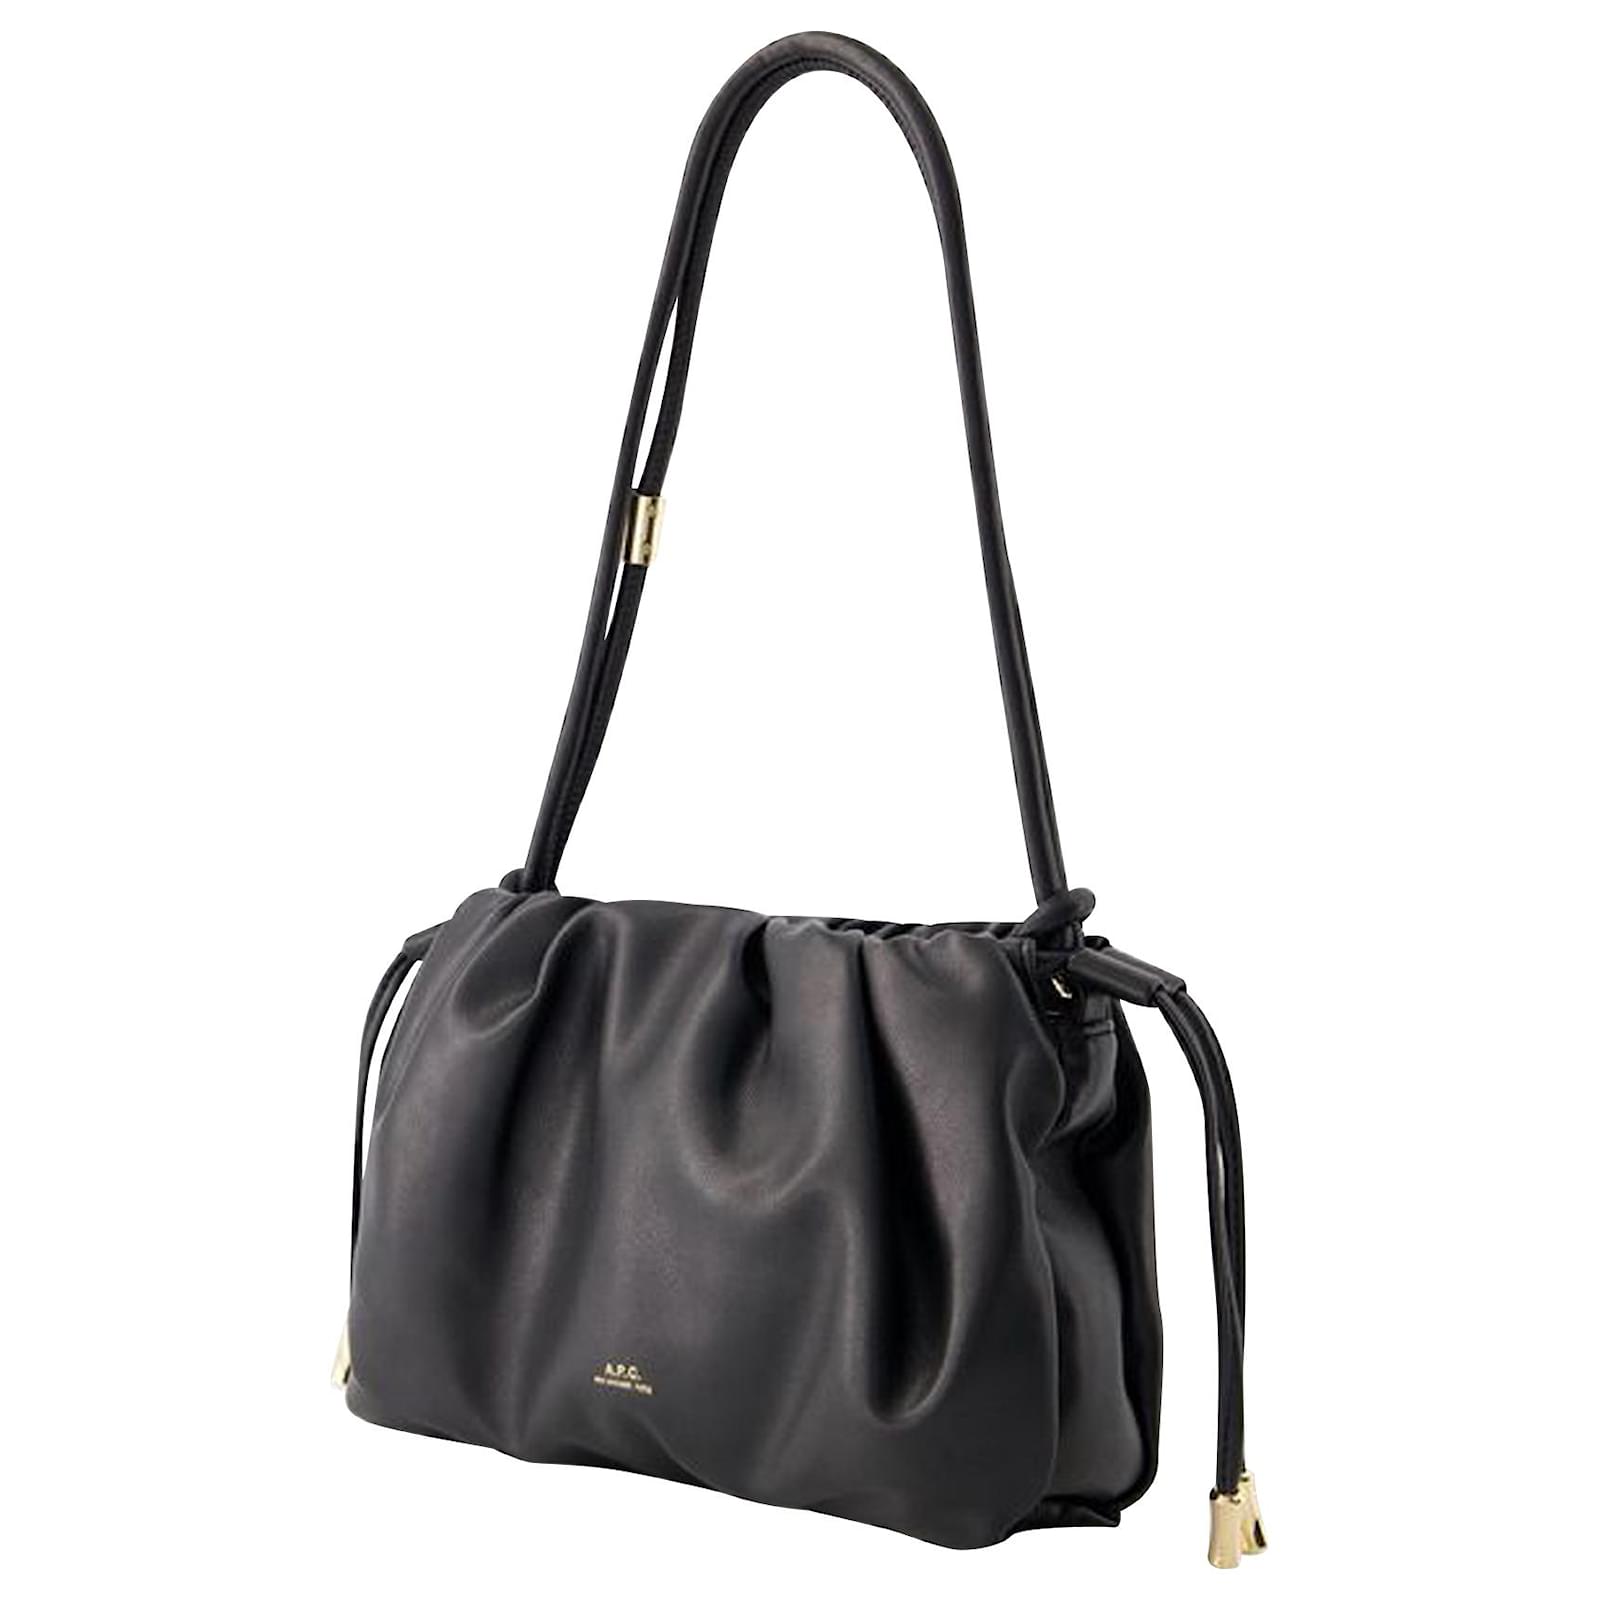 Apc Ninon Shoulder Mini Bag - A.P.C. - Synthetic - Black ref